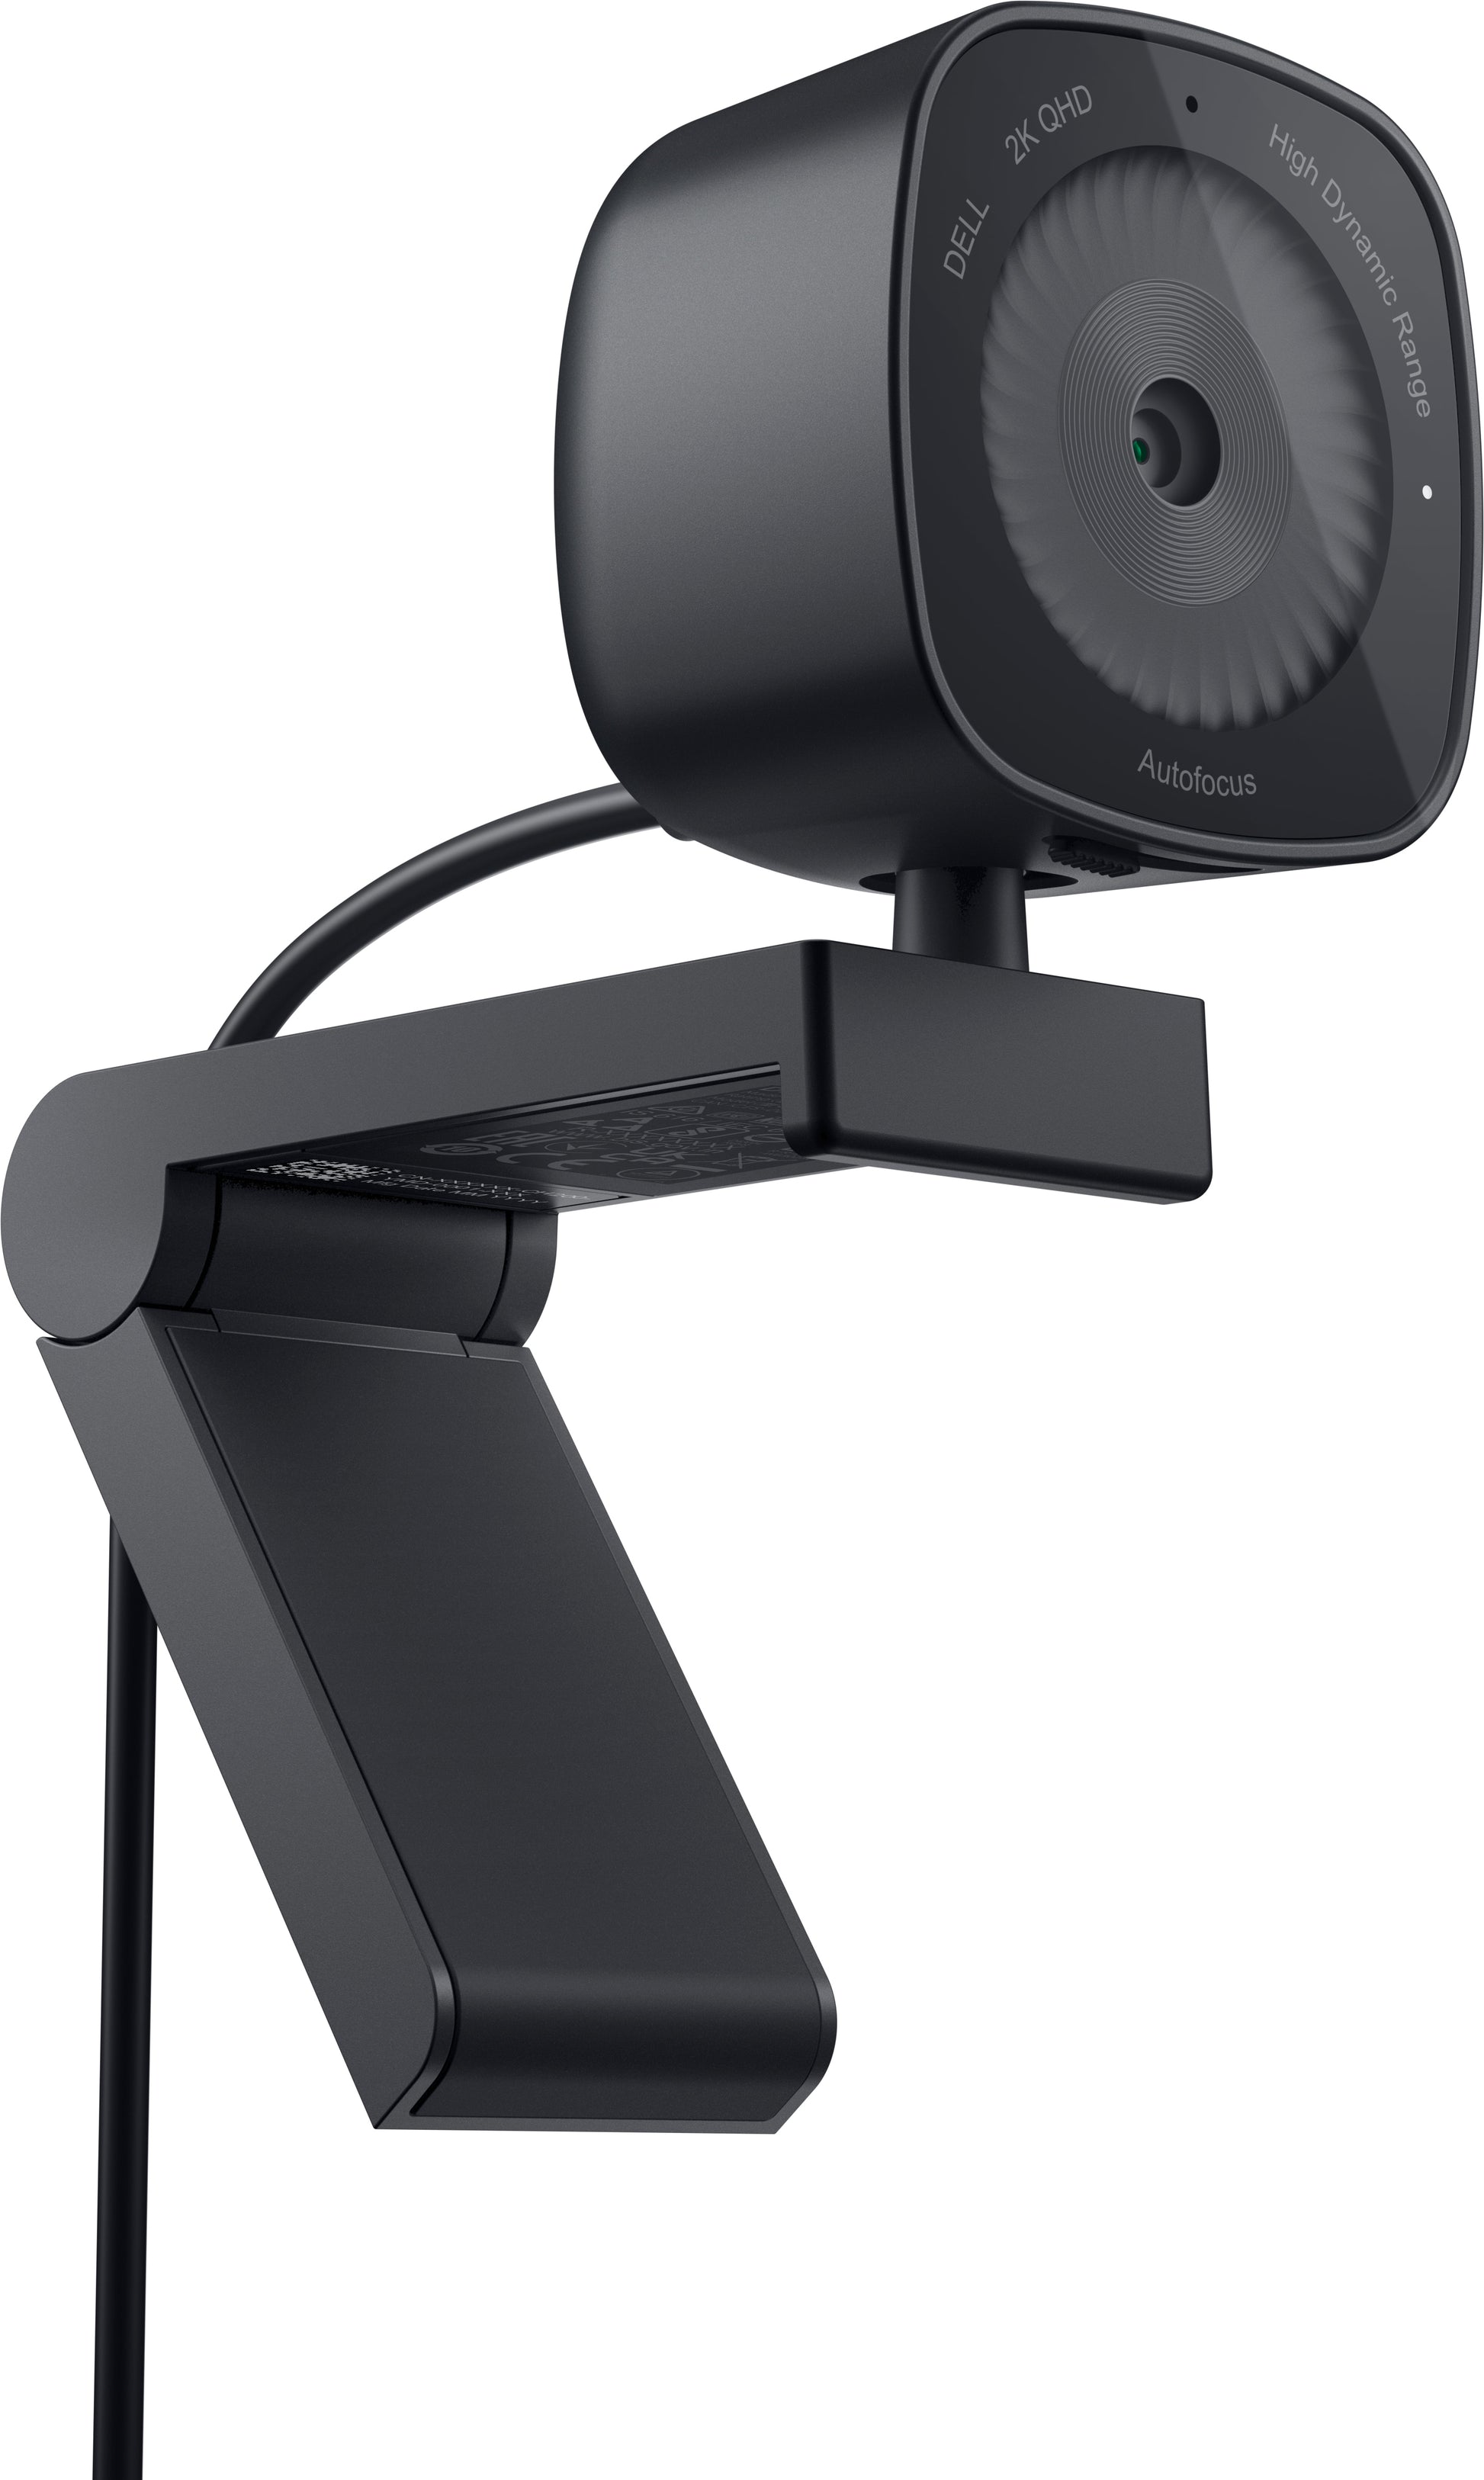 DELL WB3023 webcam 2560 x 1440 pixels USB 2.0 Black-1